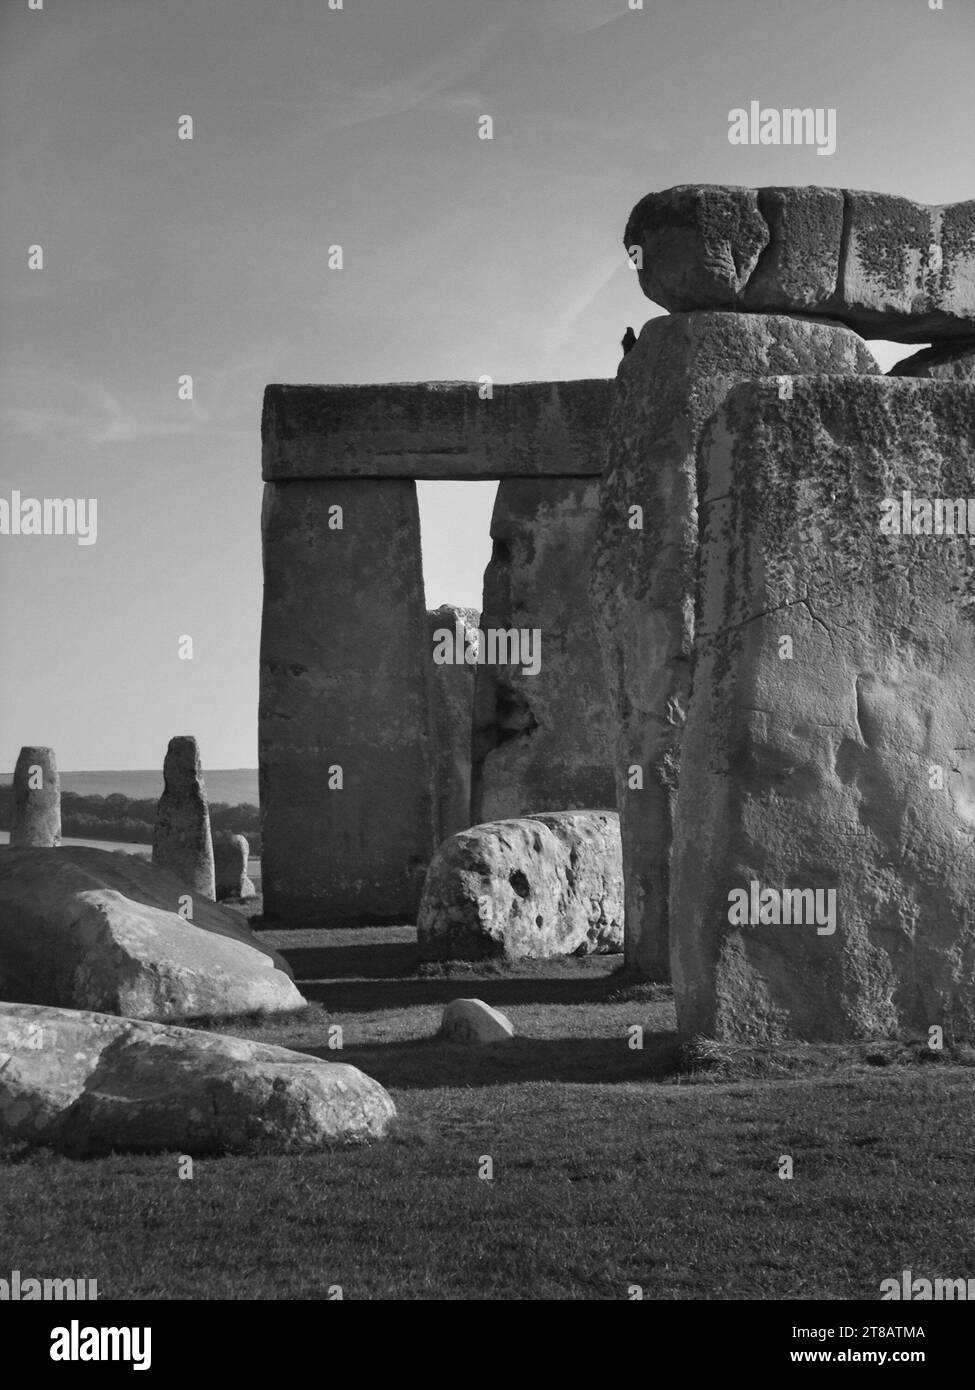 Stonehenge, pierres anciennes du Néolithique, monument du cercle de pierre. Wiltshire, Angleterre, Royaume-Uni. Image monochrome. Banque D'Images